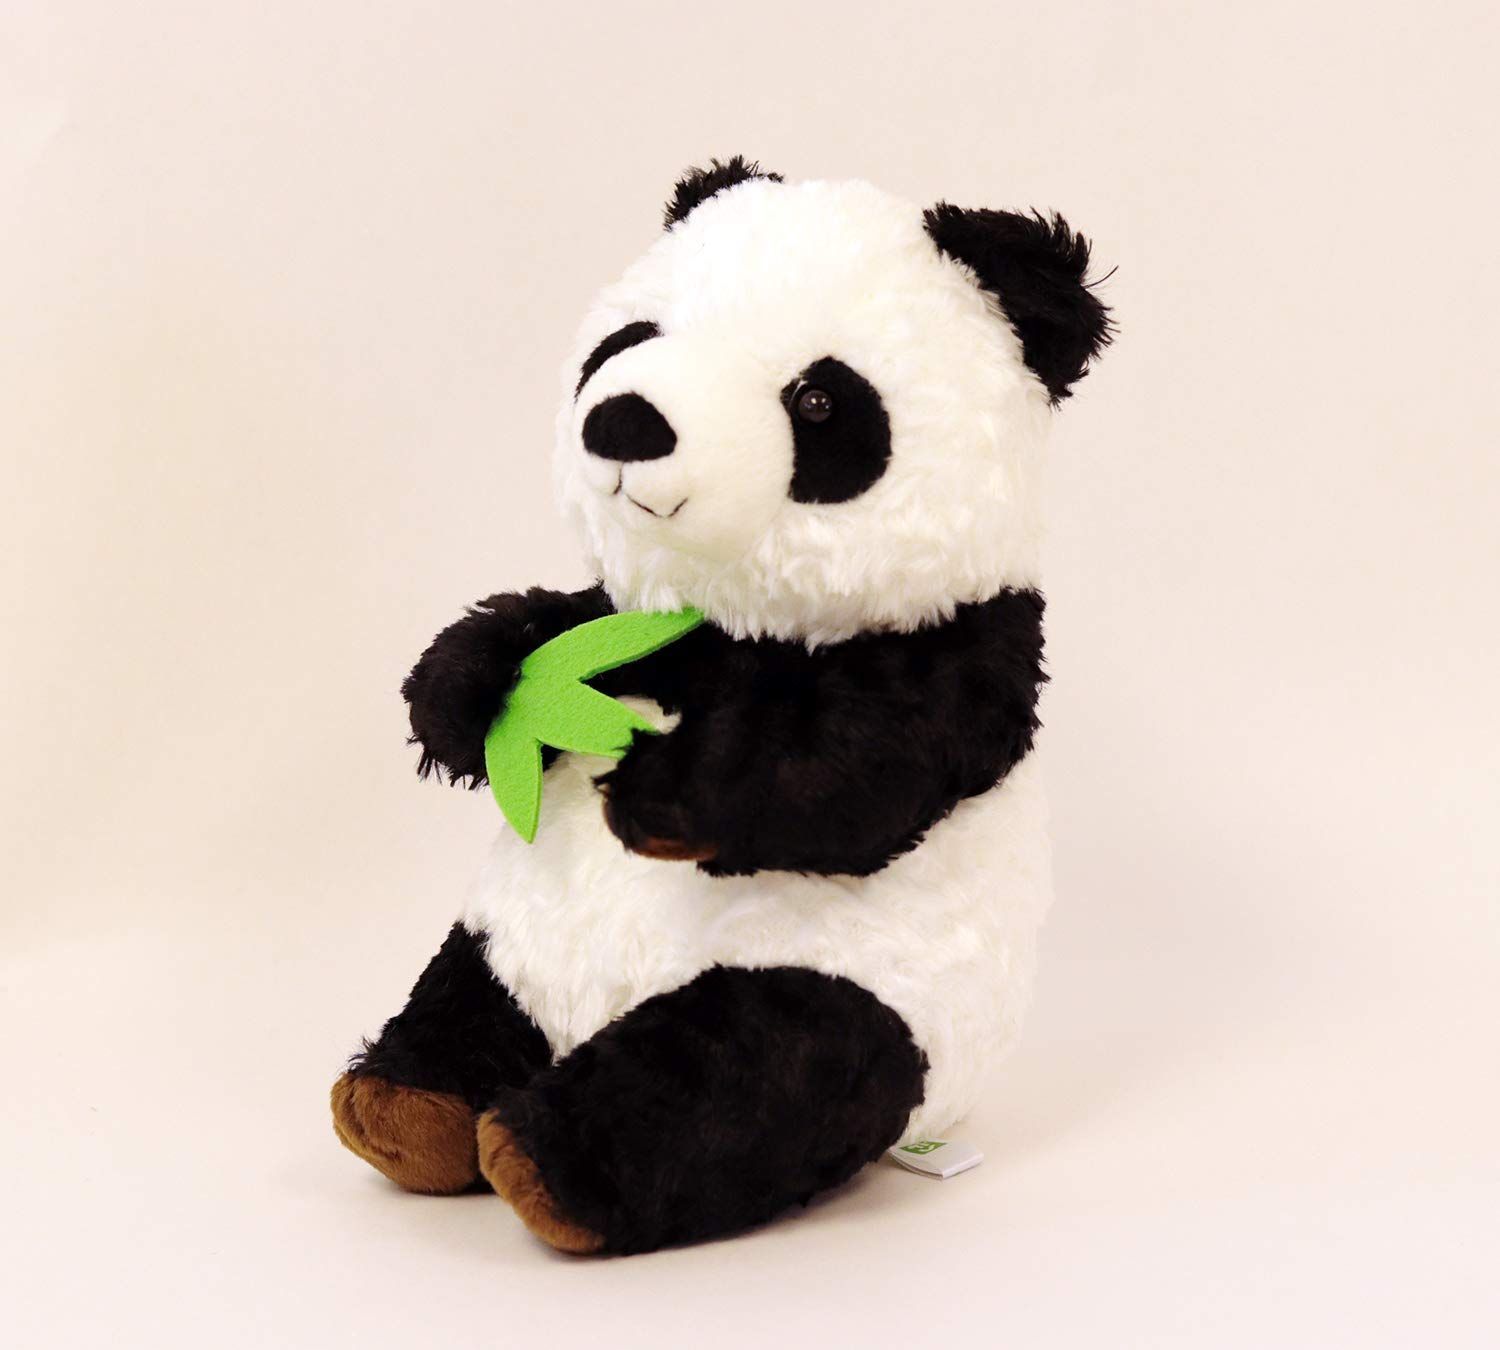 吉徳 幸福大熊猫(シンフー・パンダ)S 17CM 180156